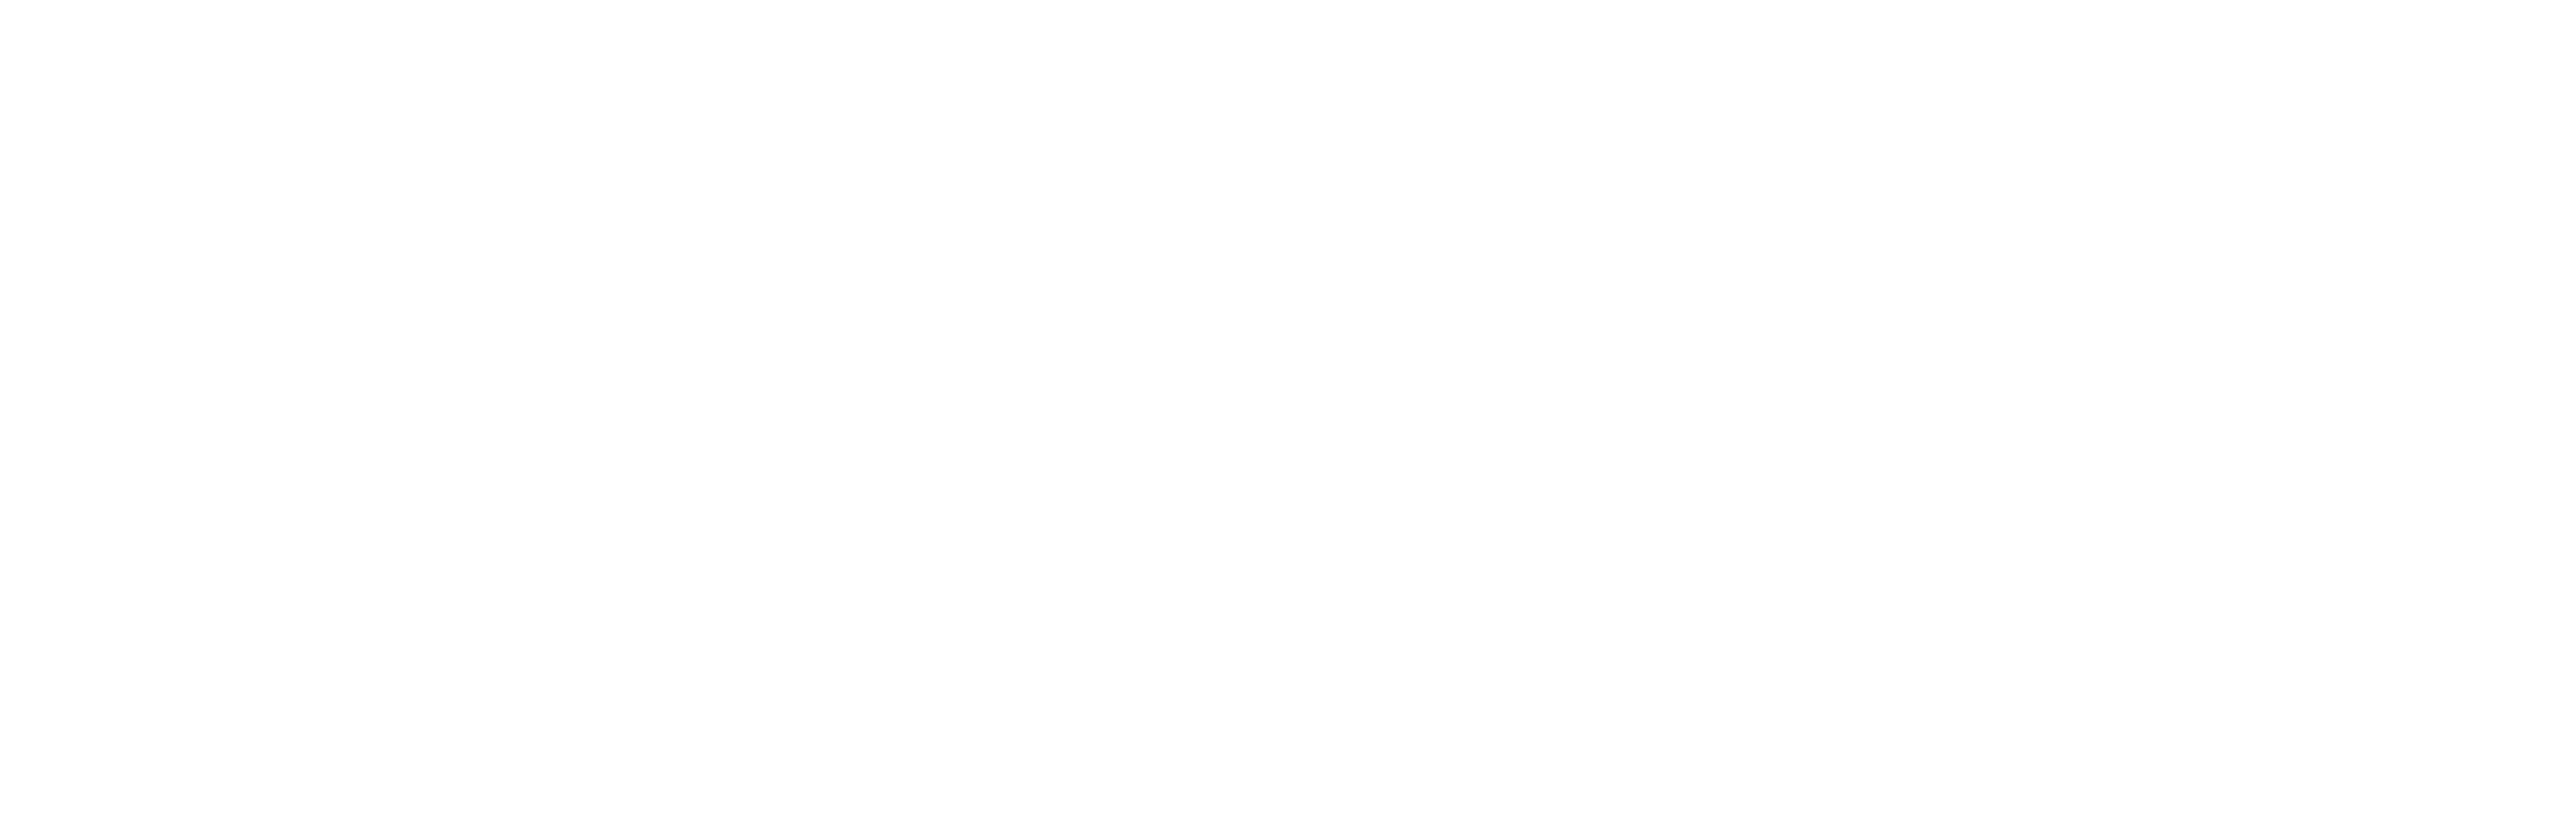 Drfirst